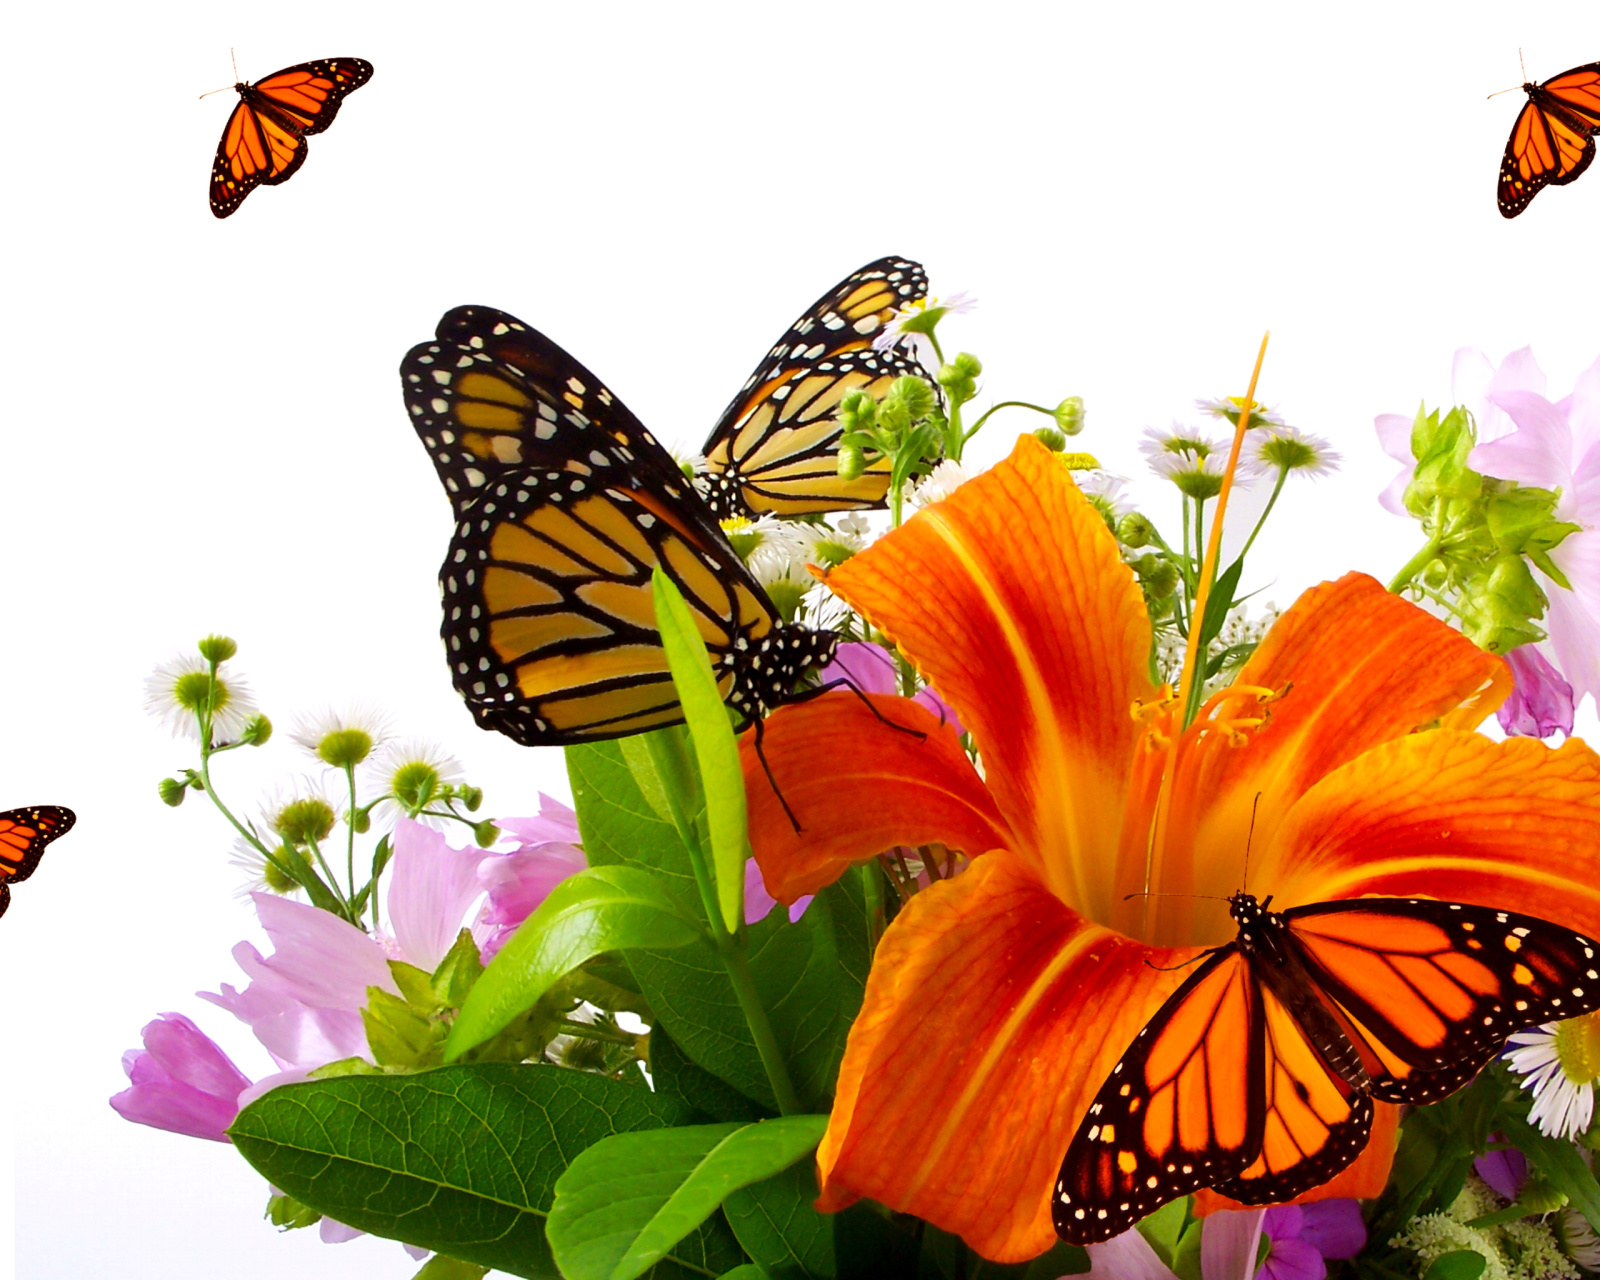 Lilies and orange butterflies screenshot #1 1600x1280